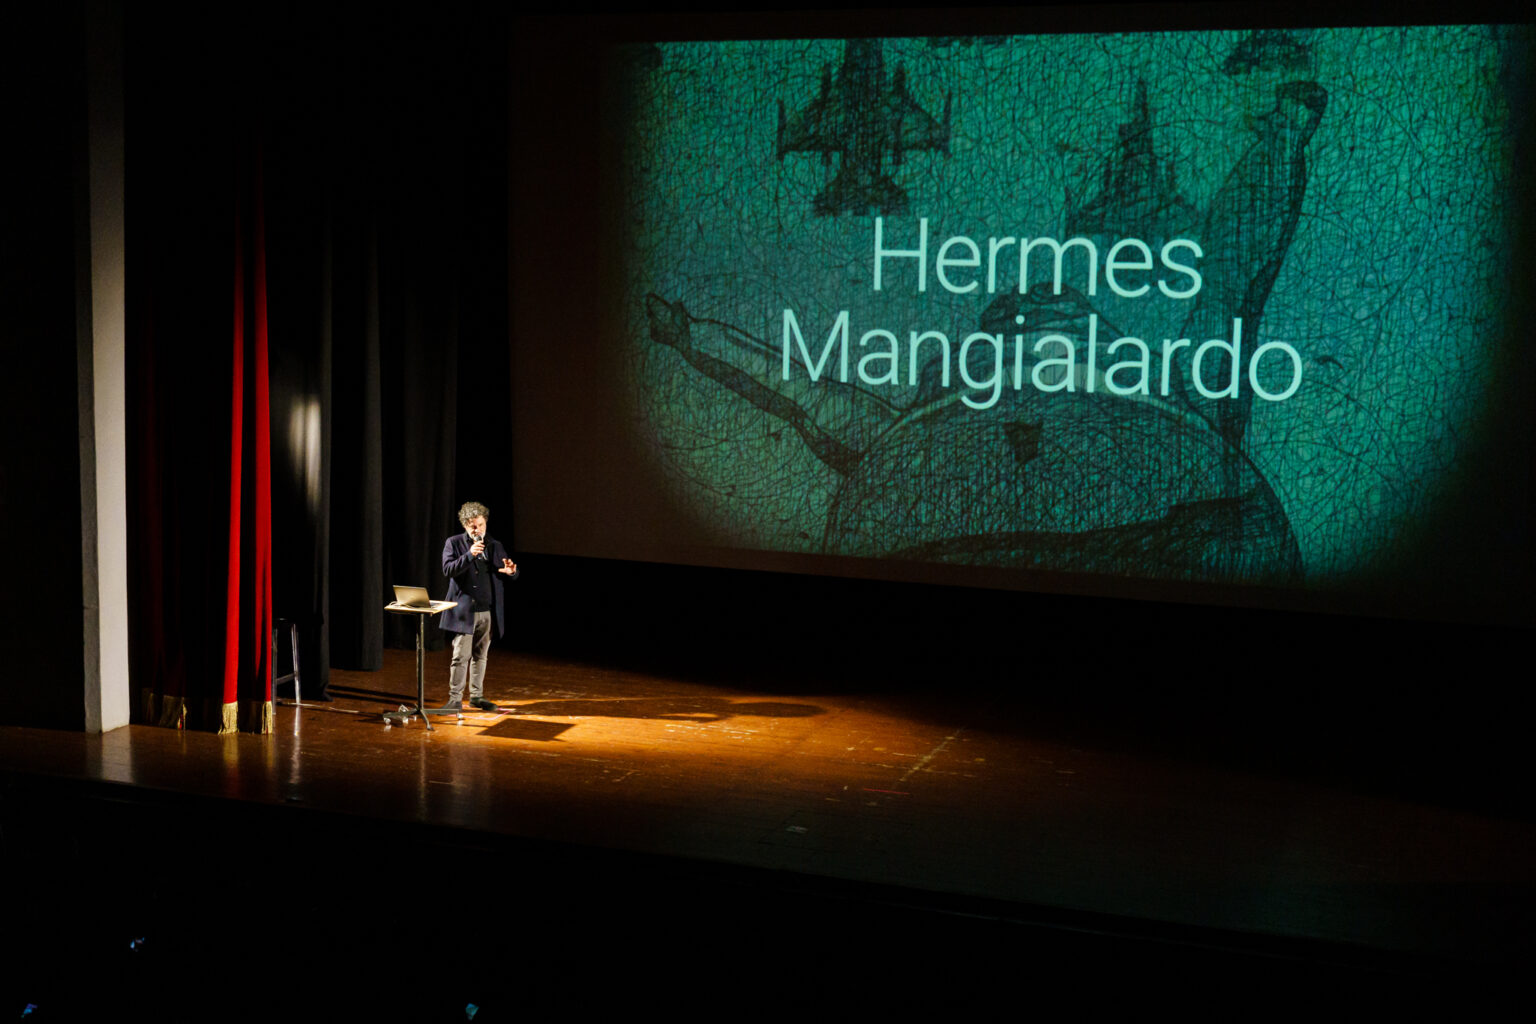 Vedere l'invisibile masterclass - Hermes Mangialardo